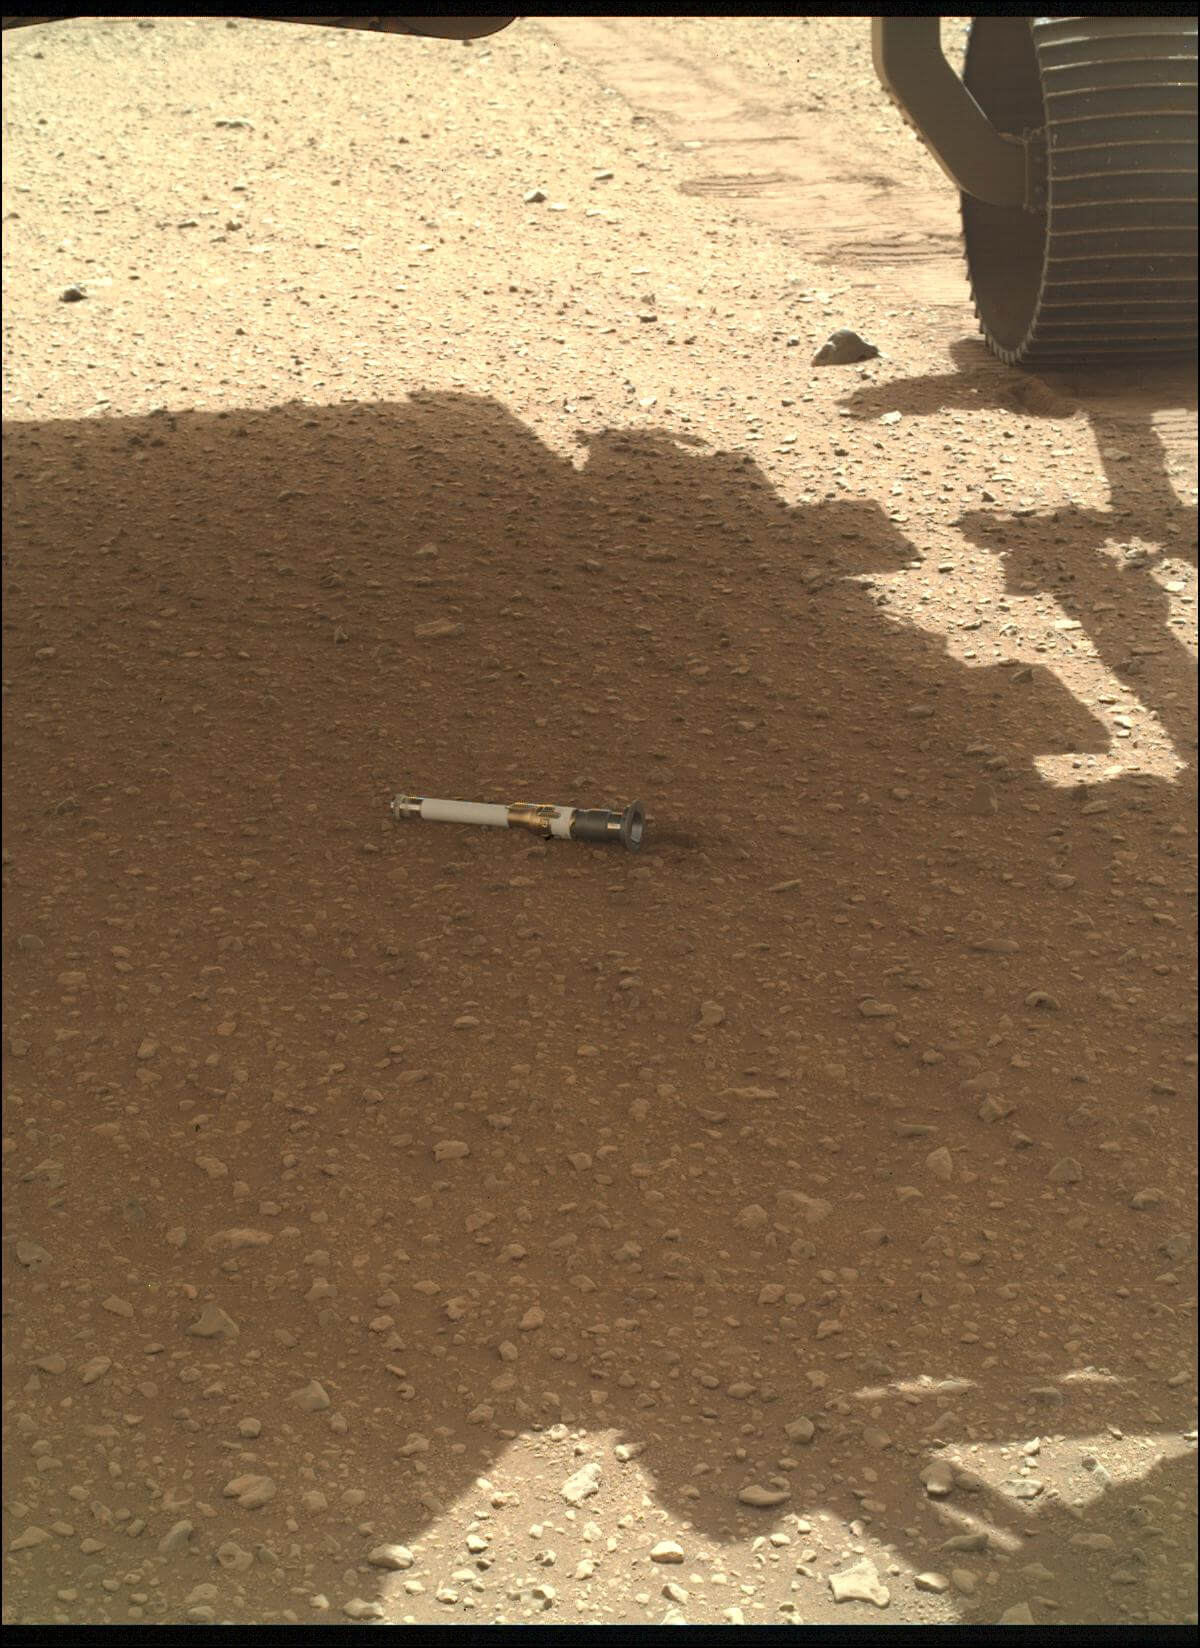 火星サンプルリターン計画の一環として火星探査車「Perseverance」から初めて投下されたサンプル保管容器